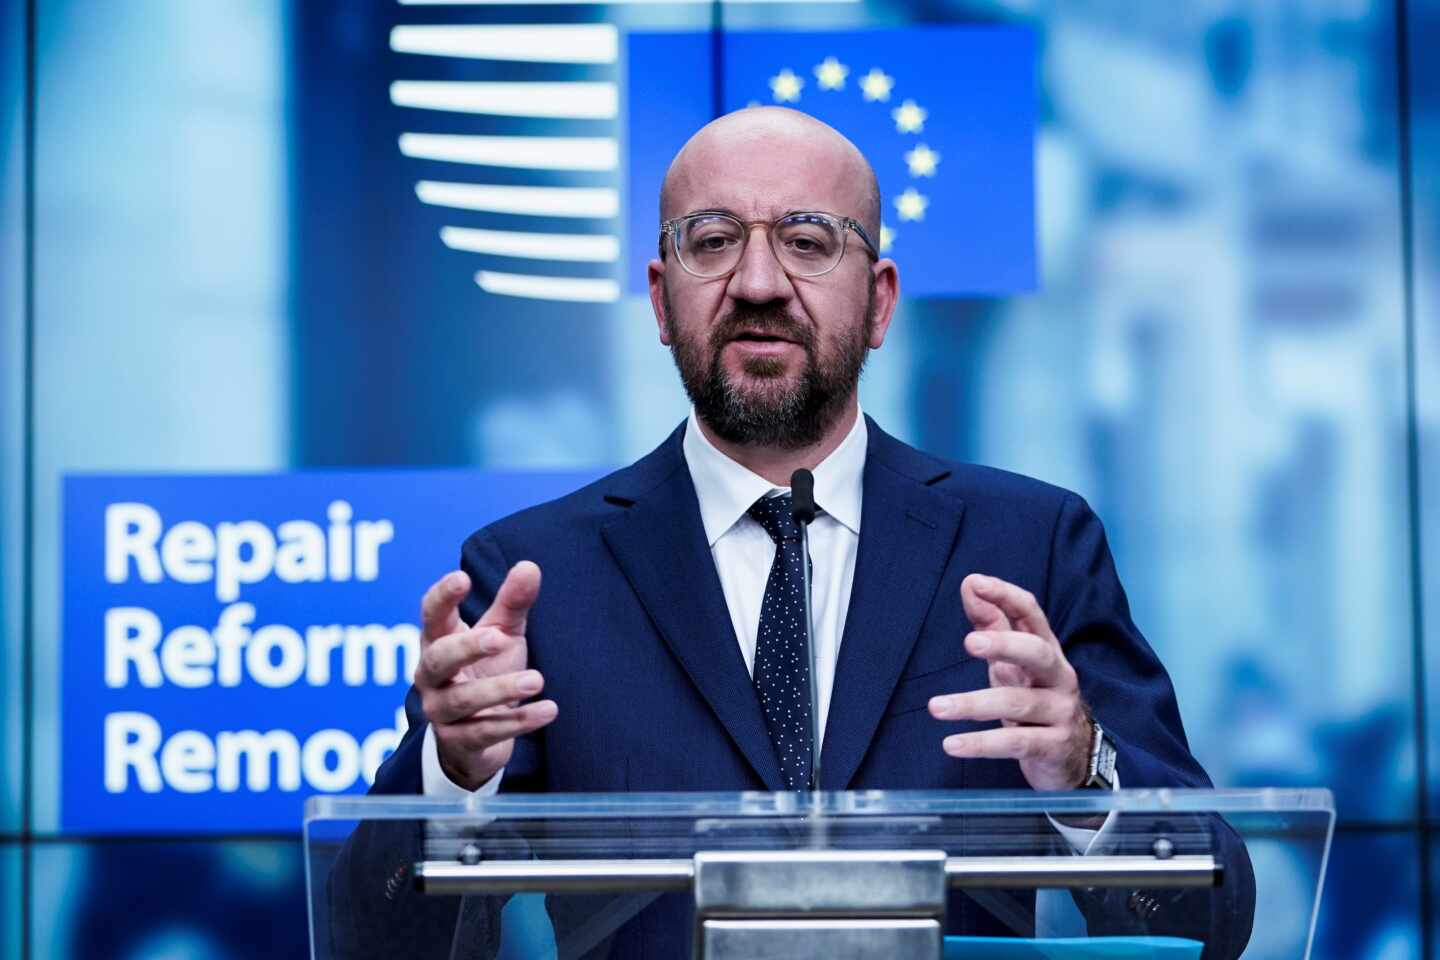 El Consejo Europeo endurece las condiciones para el fondo de reconstrucción